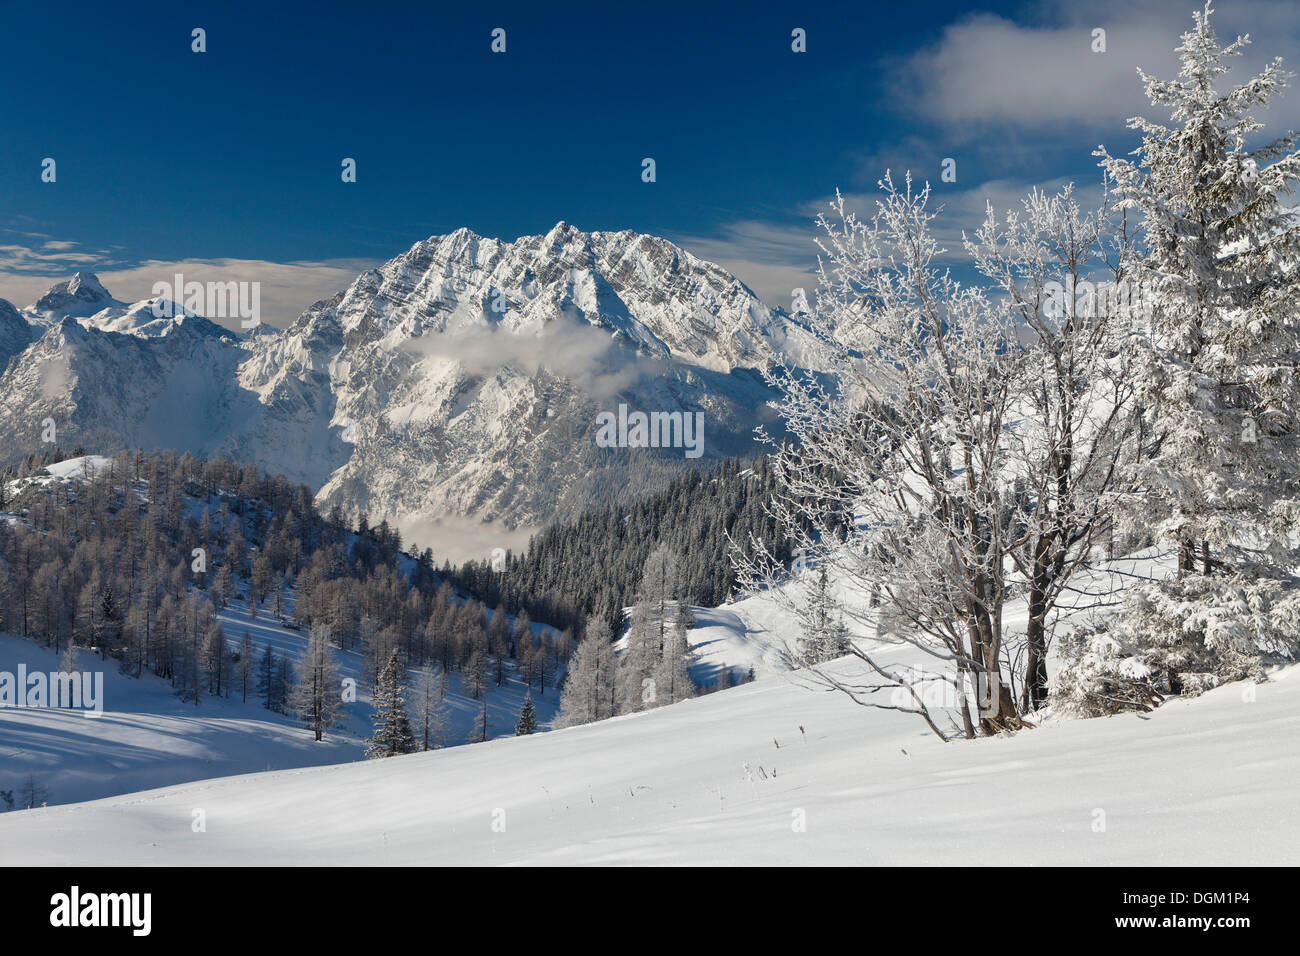 La montagne watzmann et hundstod mountain, extrême gauche, le parc national de Berchtesgaden, Berchtesgadener Land, Bavière Banque D'Images